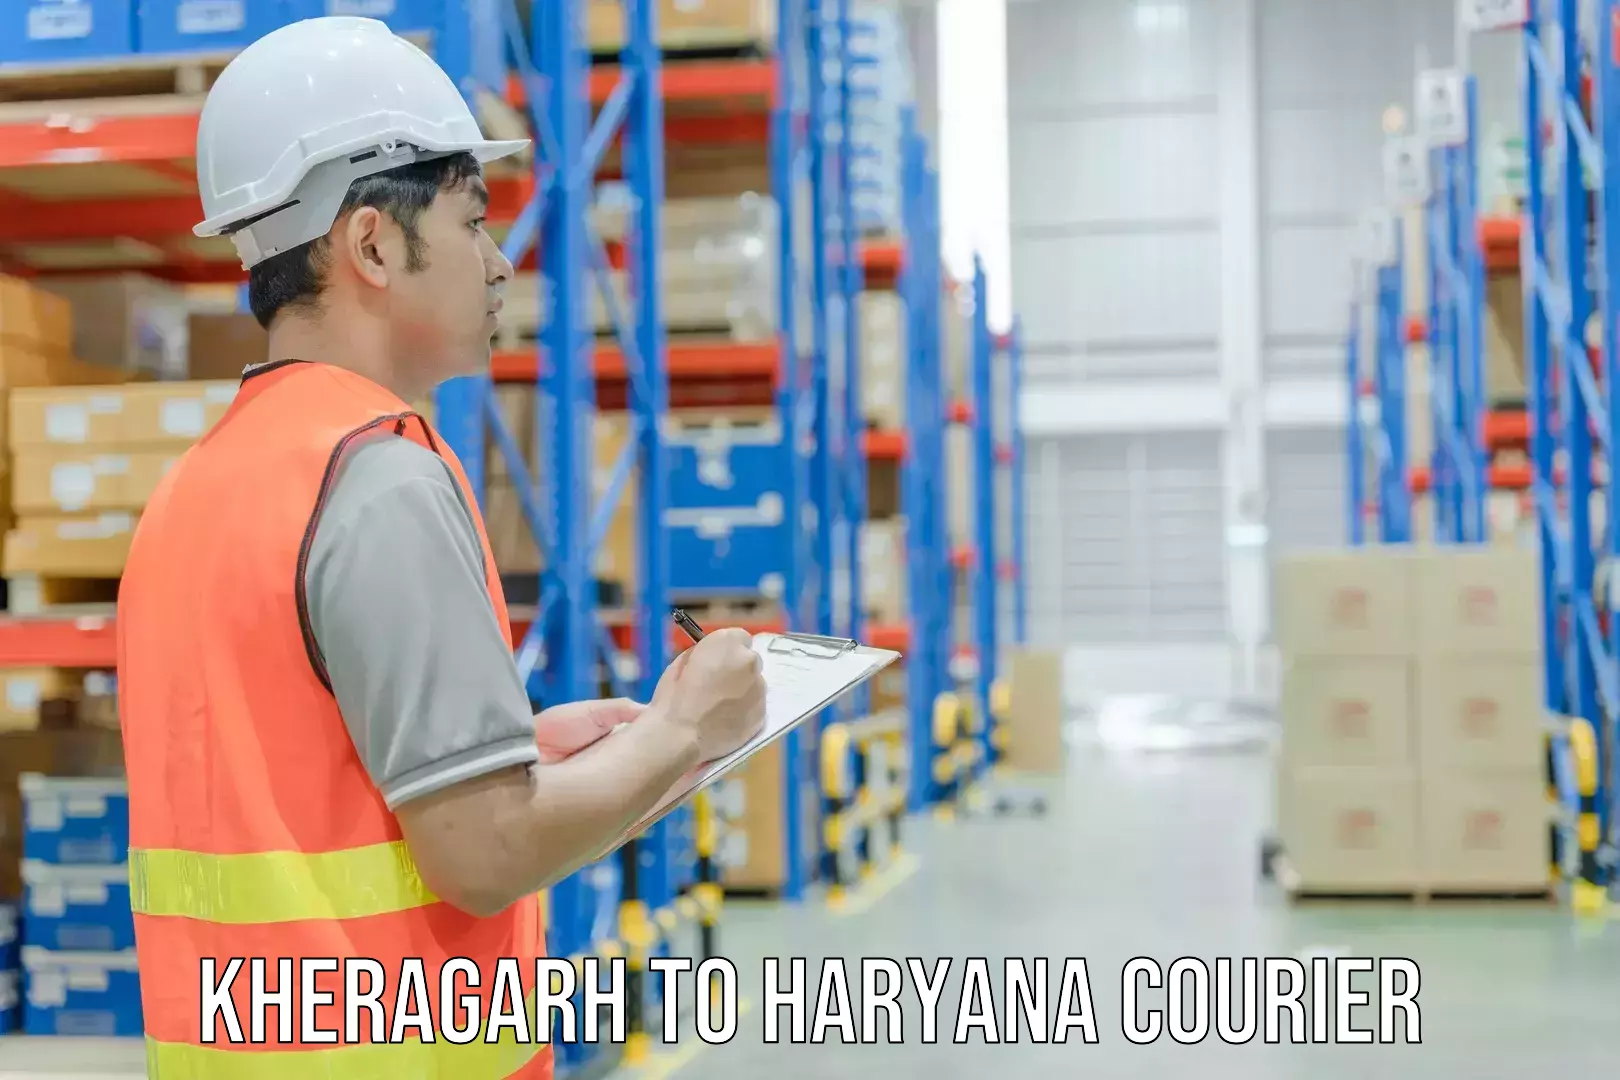 High-capacity shipping options Kheragarh to Rewari